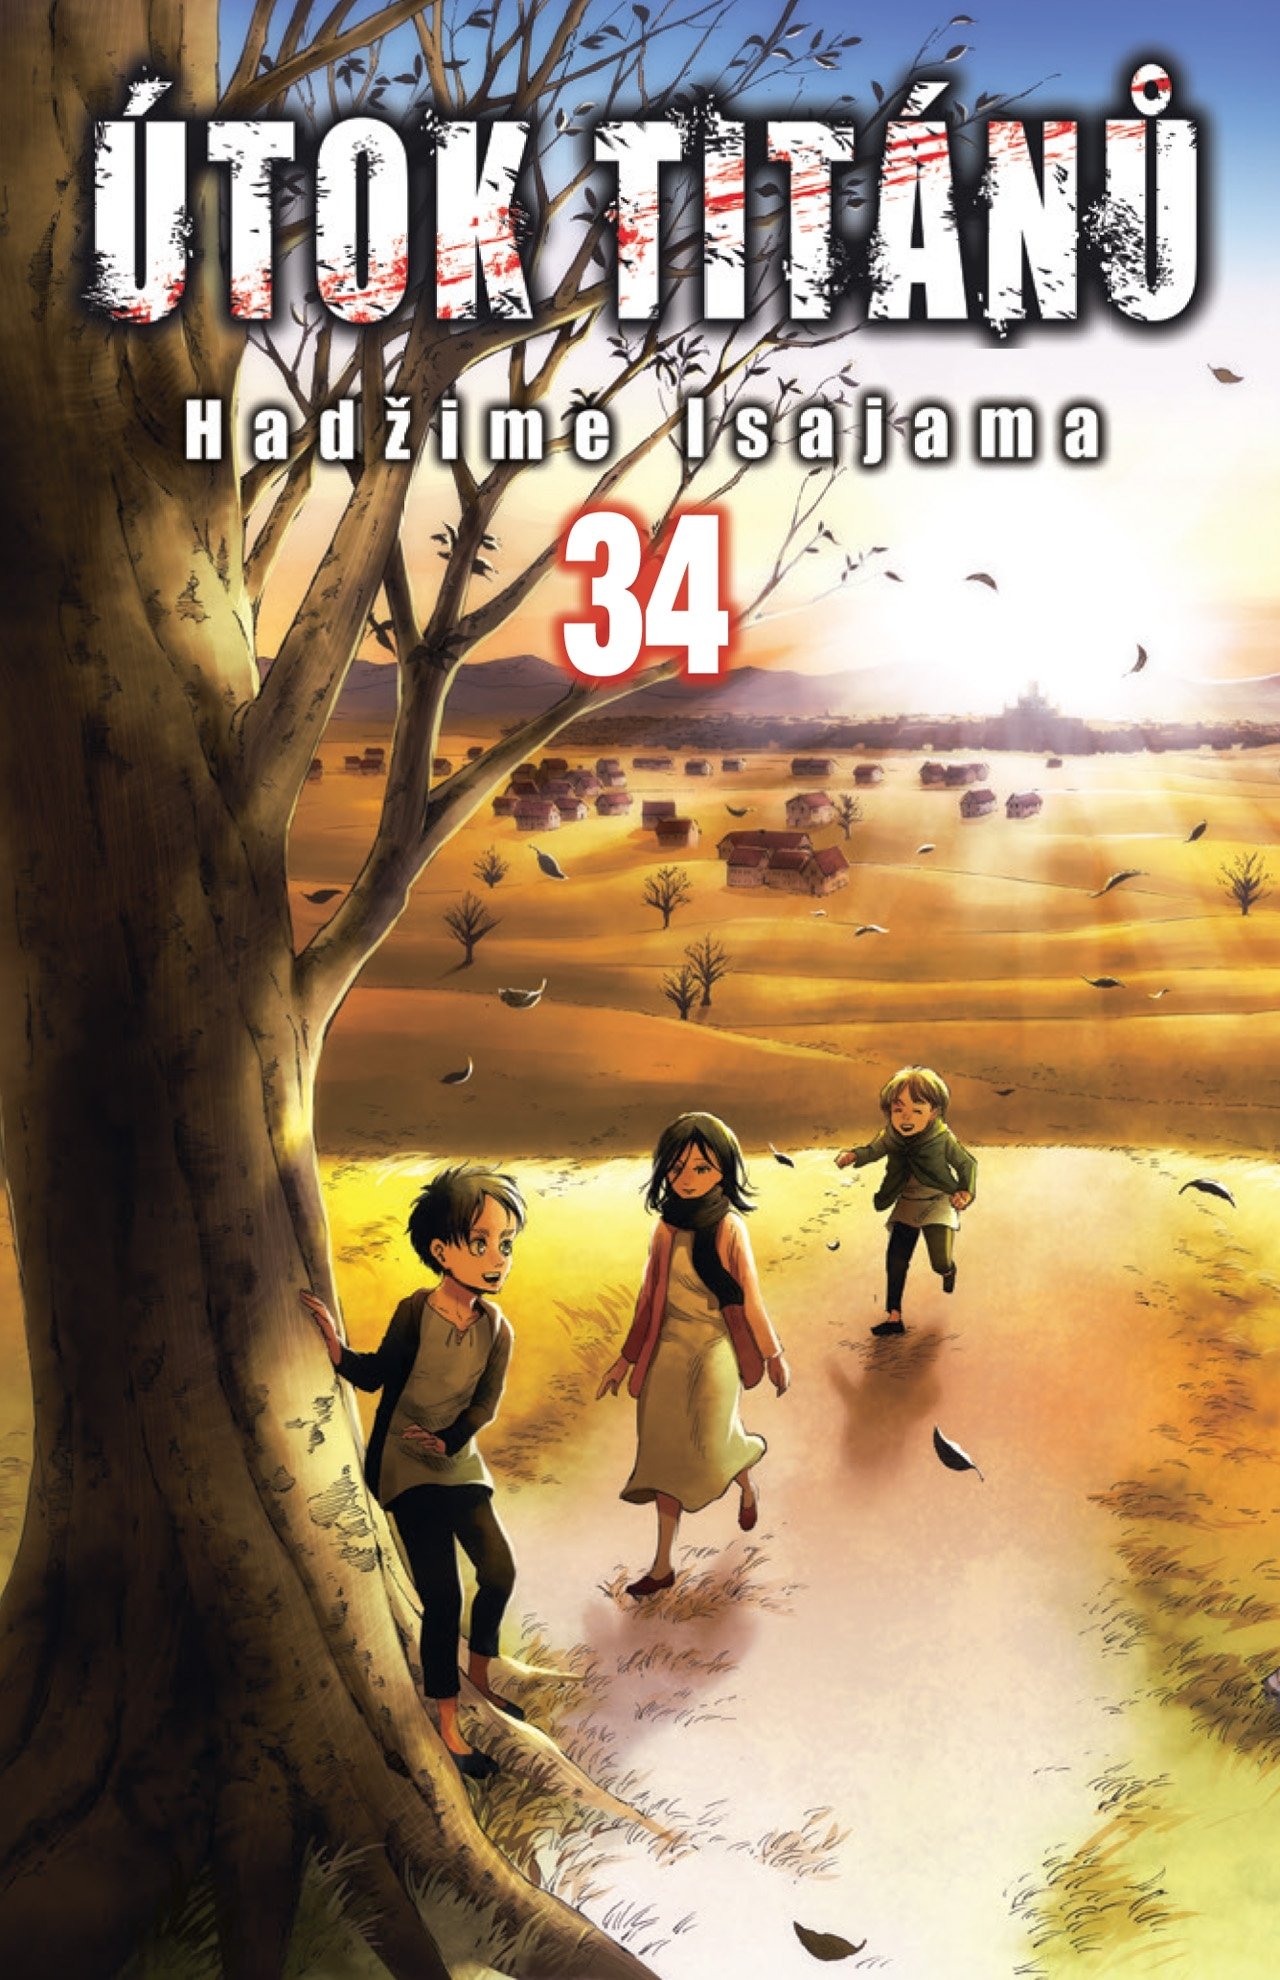 Útok titánů 34 - Hadžime Isajama